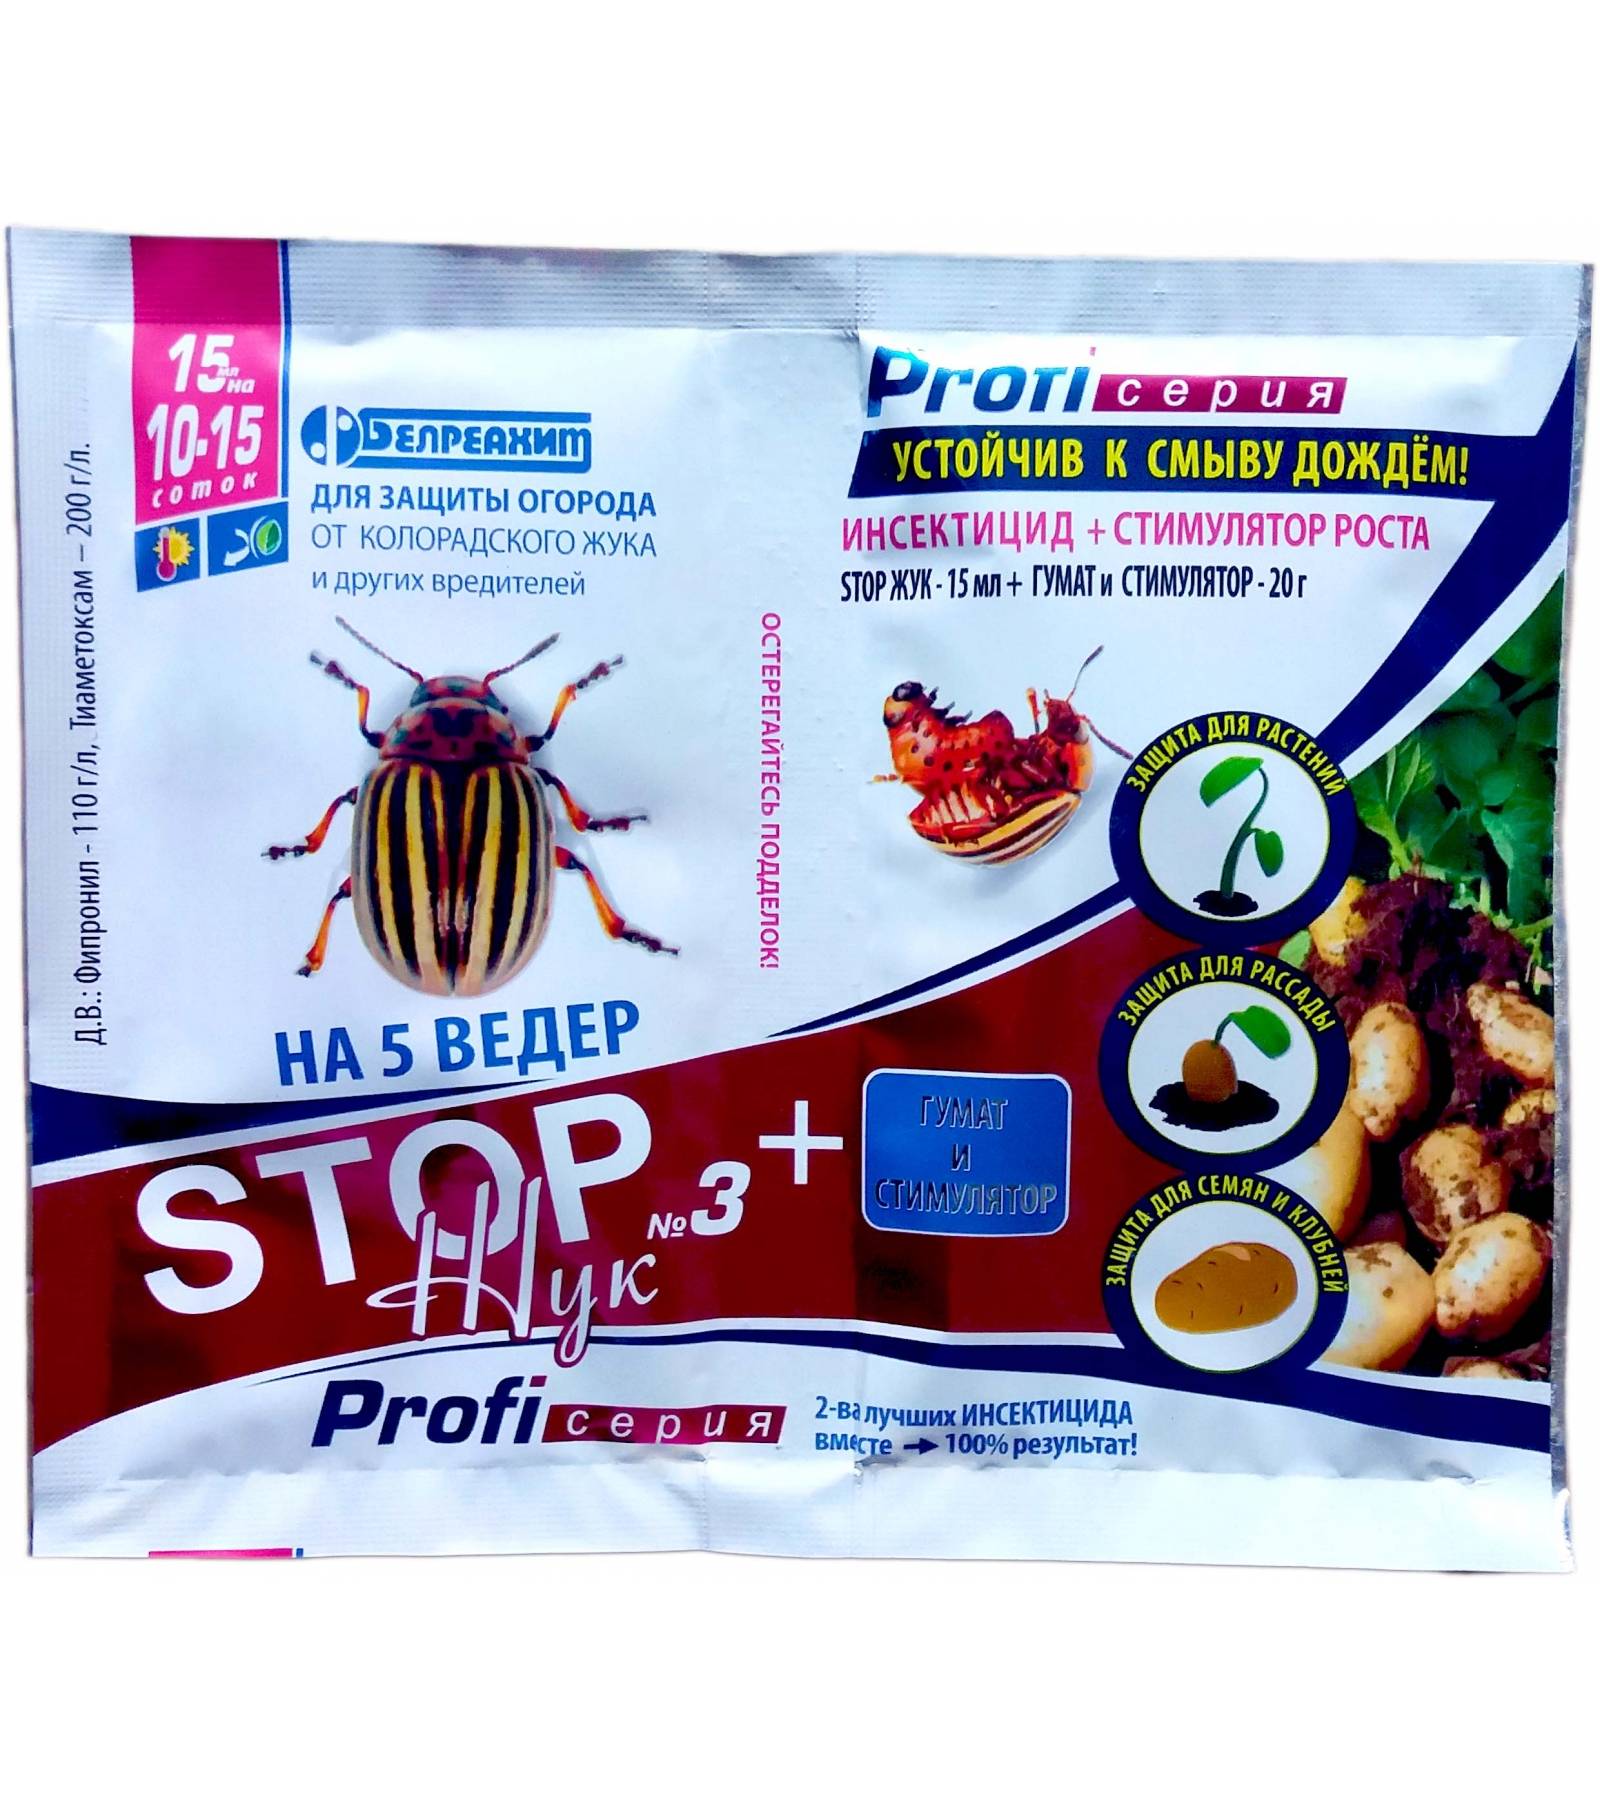 Препарат «регент» от колорадского жука: преимущества, подробная инструкция по использованию